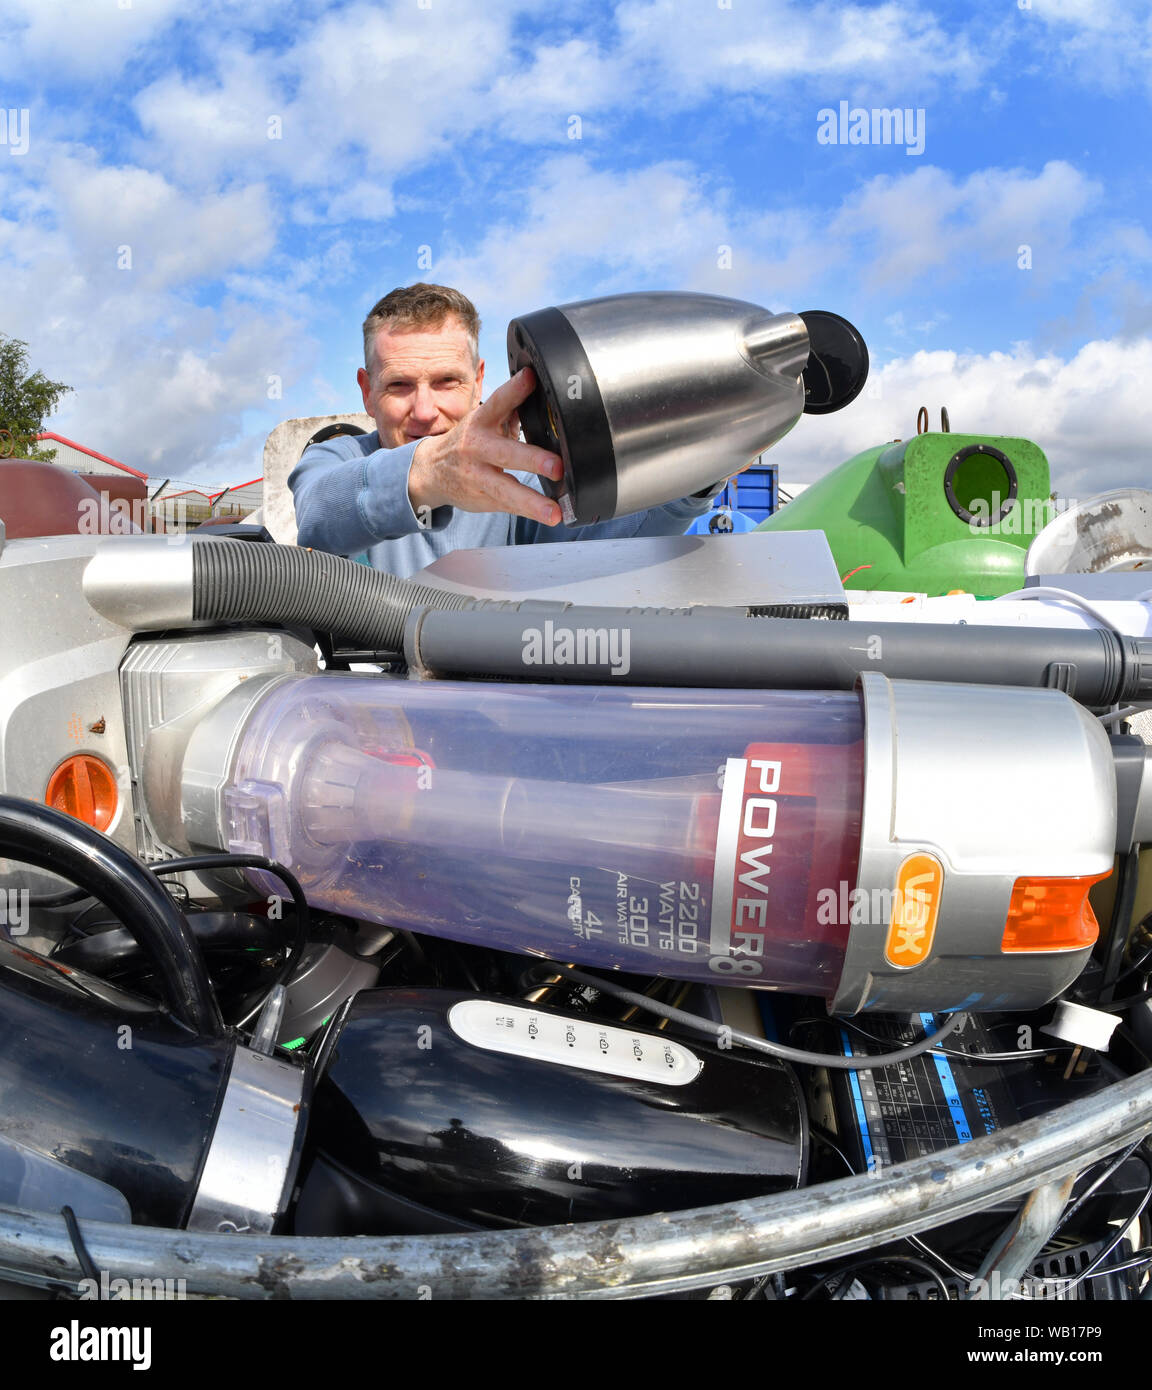 El hombre dejando aparato eléctrico roto hervidor (RAEE) para reciclaje en el Consejo en el centro de reciclaje doméstico reino unido Foto de stock